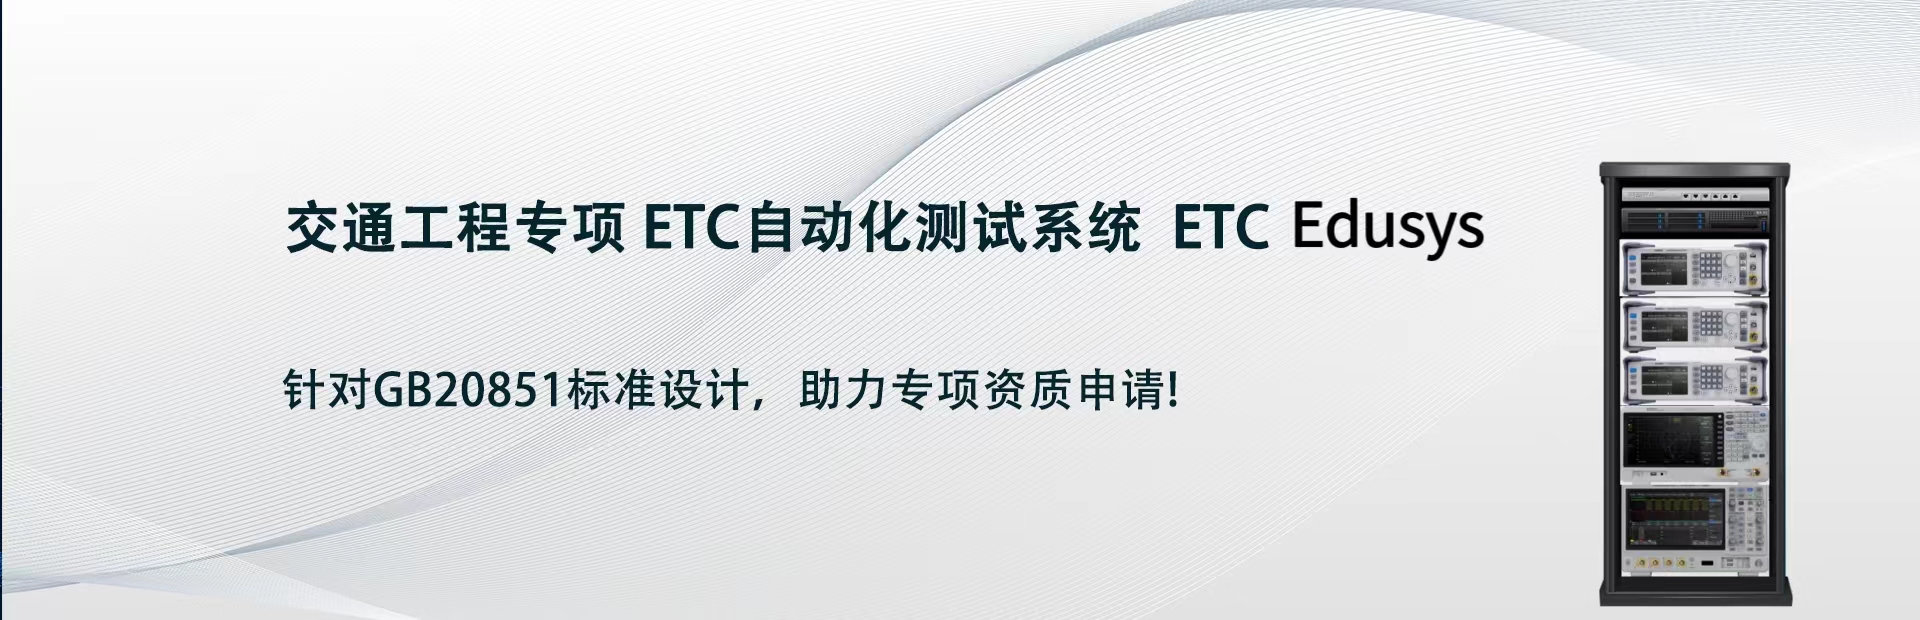 交通工程專項 ETC自動化測試系統  ETC Edusys